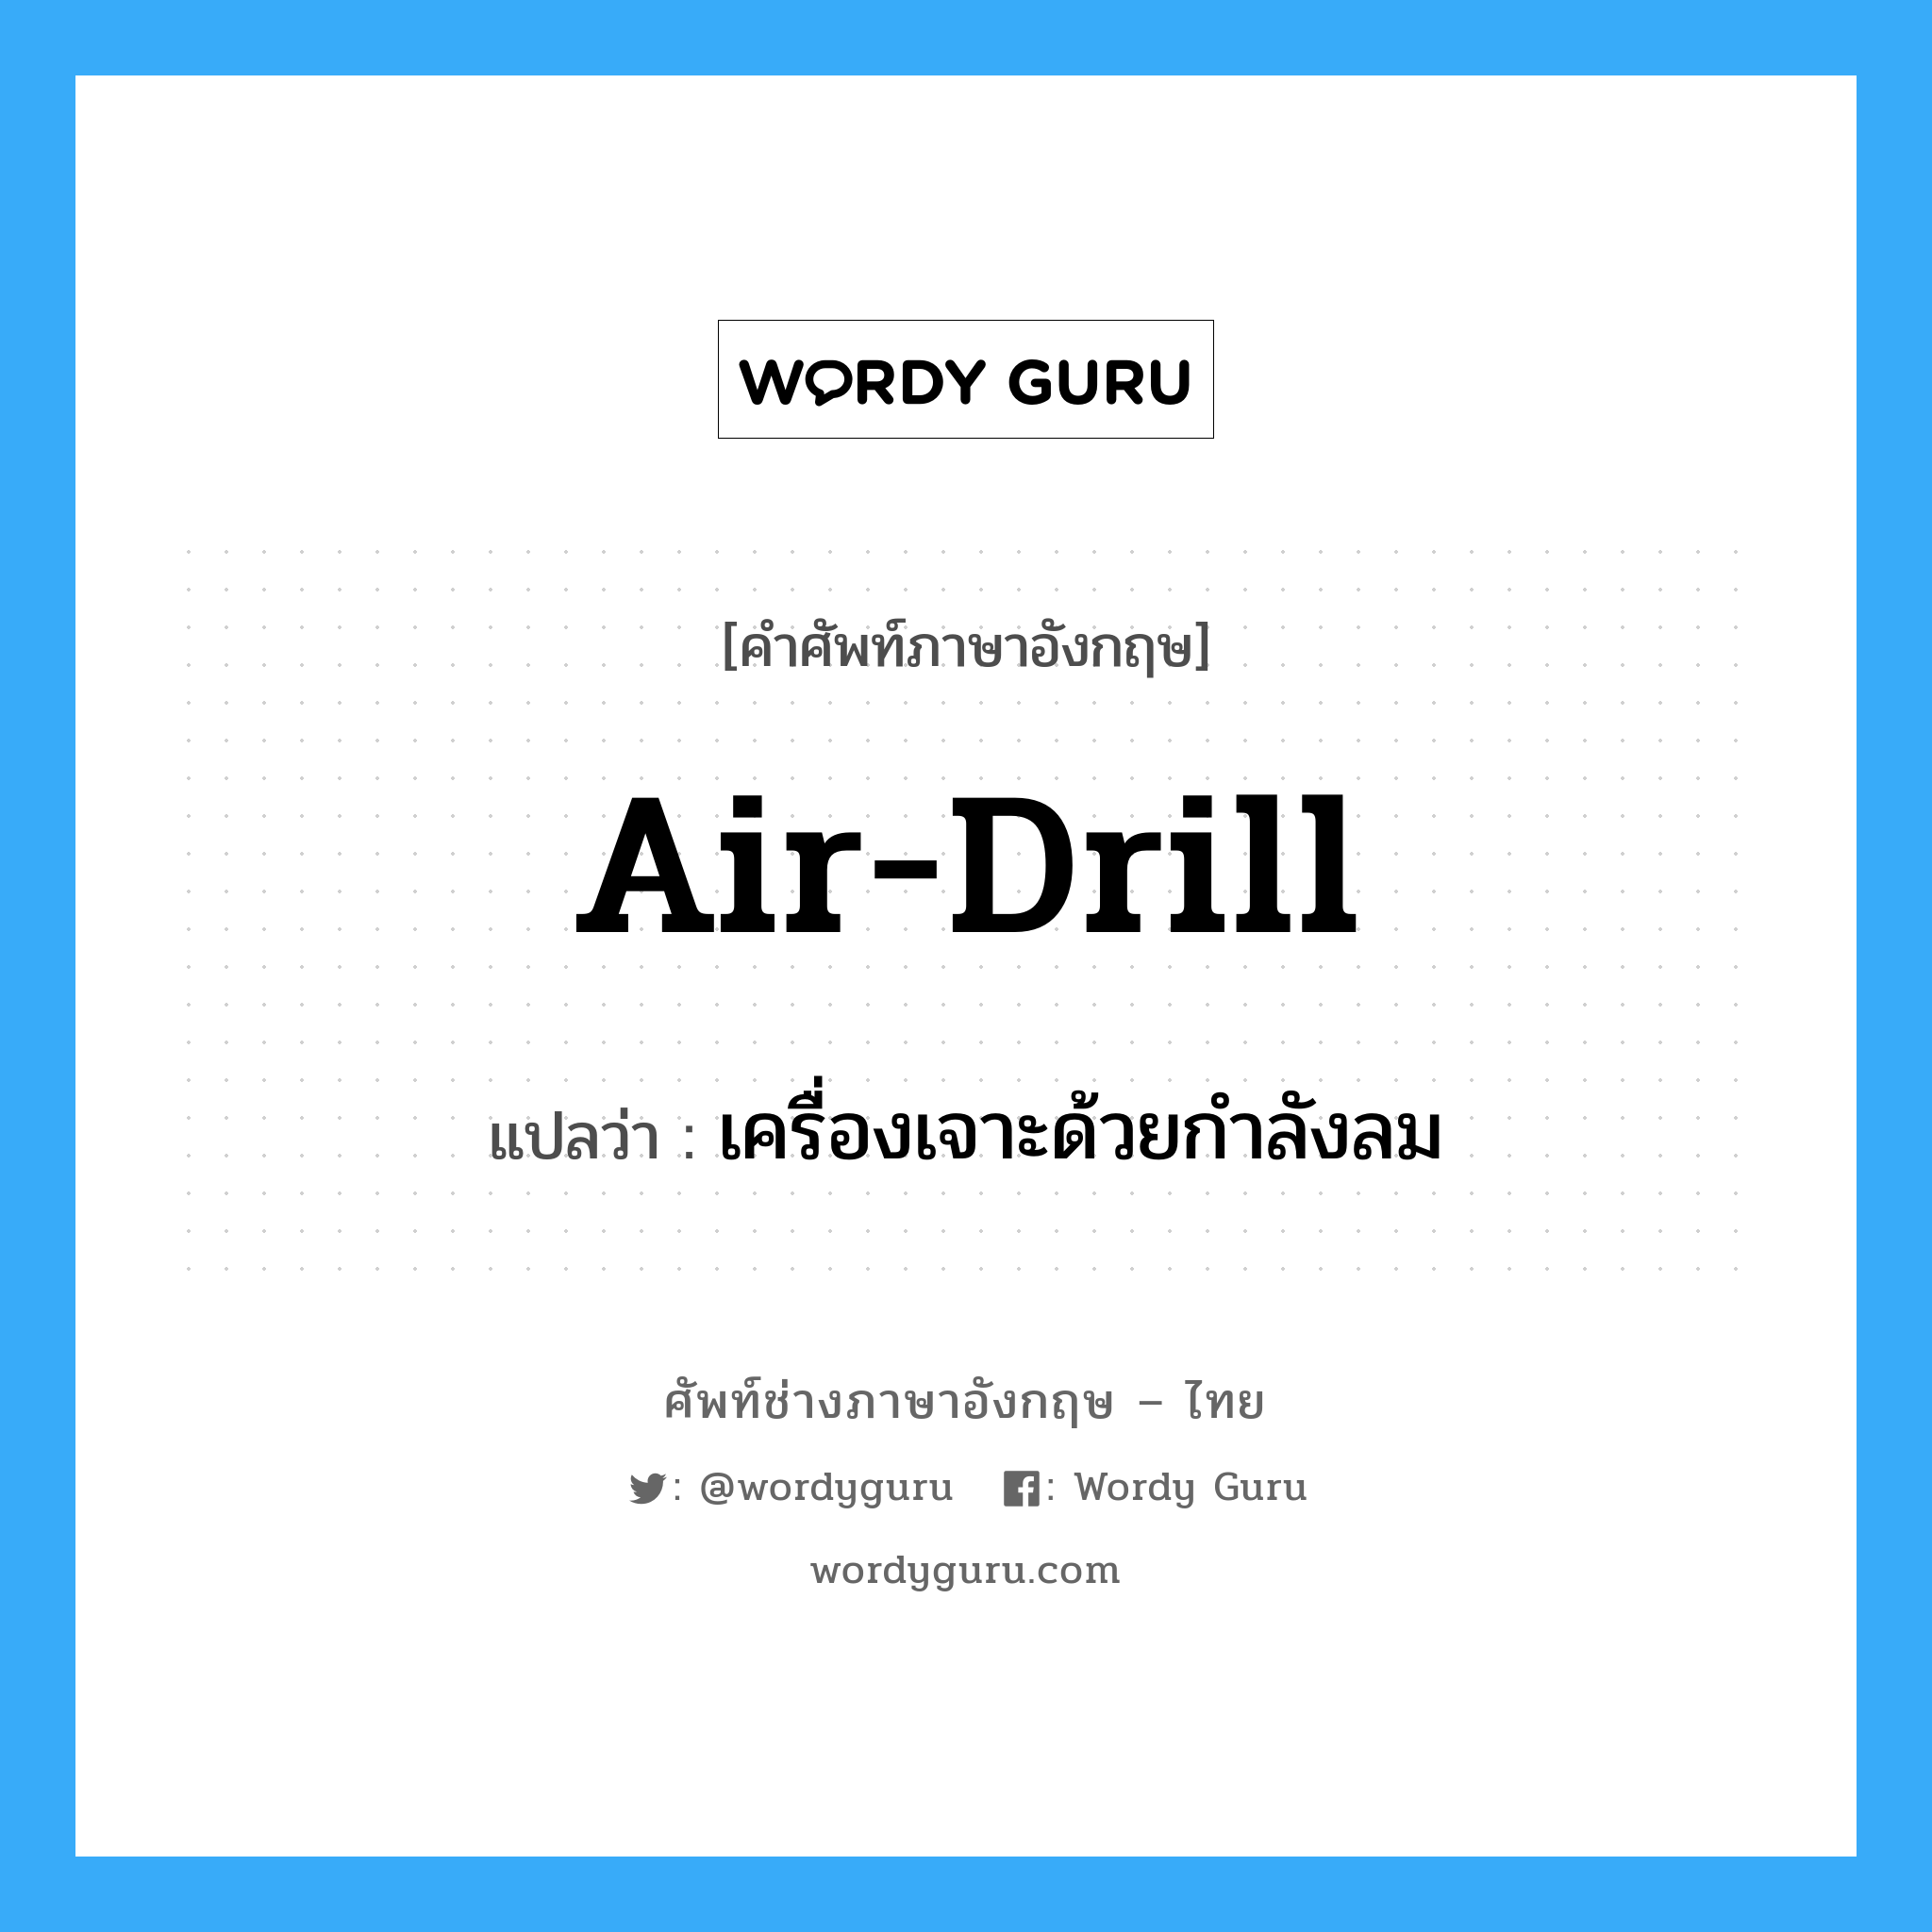 air drill แปลว่า?, คำศัพท์ช่างภาษาอังกฤษ - ไทย air-drill คำศัพท์ภาษาอังกฤษ air-drill แปลว่า เครื่องเจาะด้วยกำลังลม